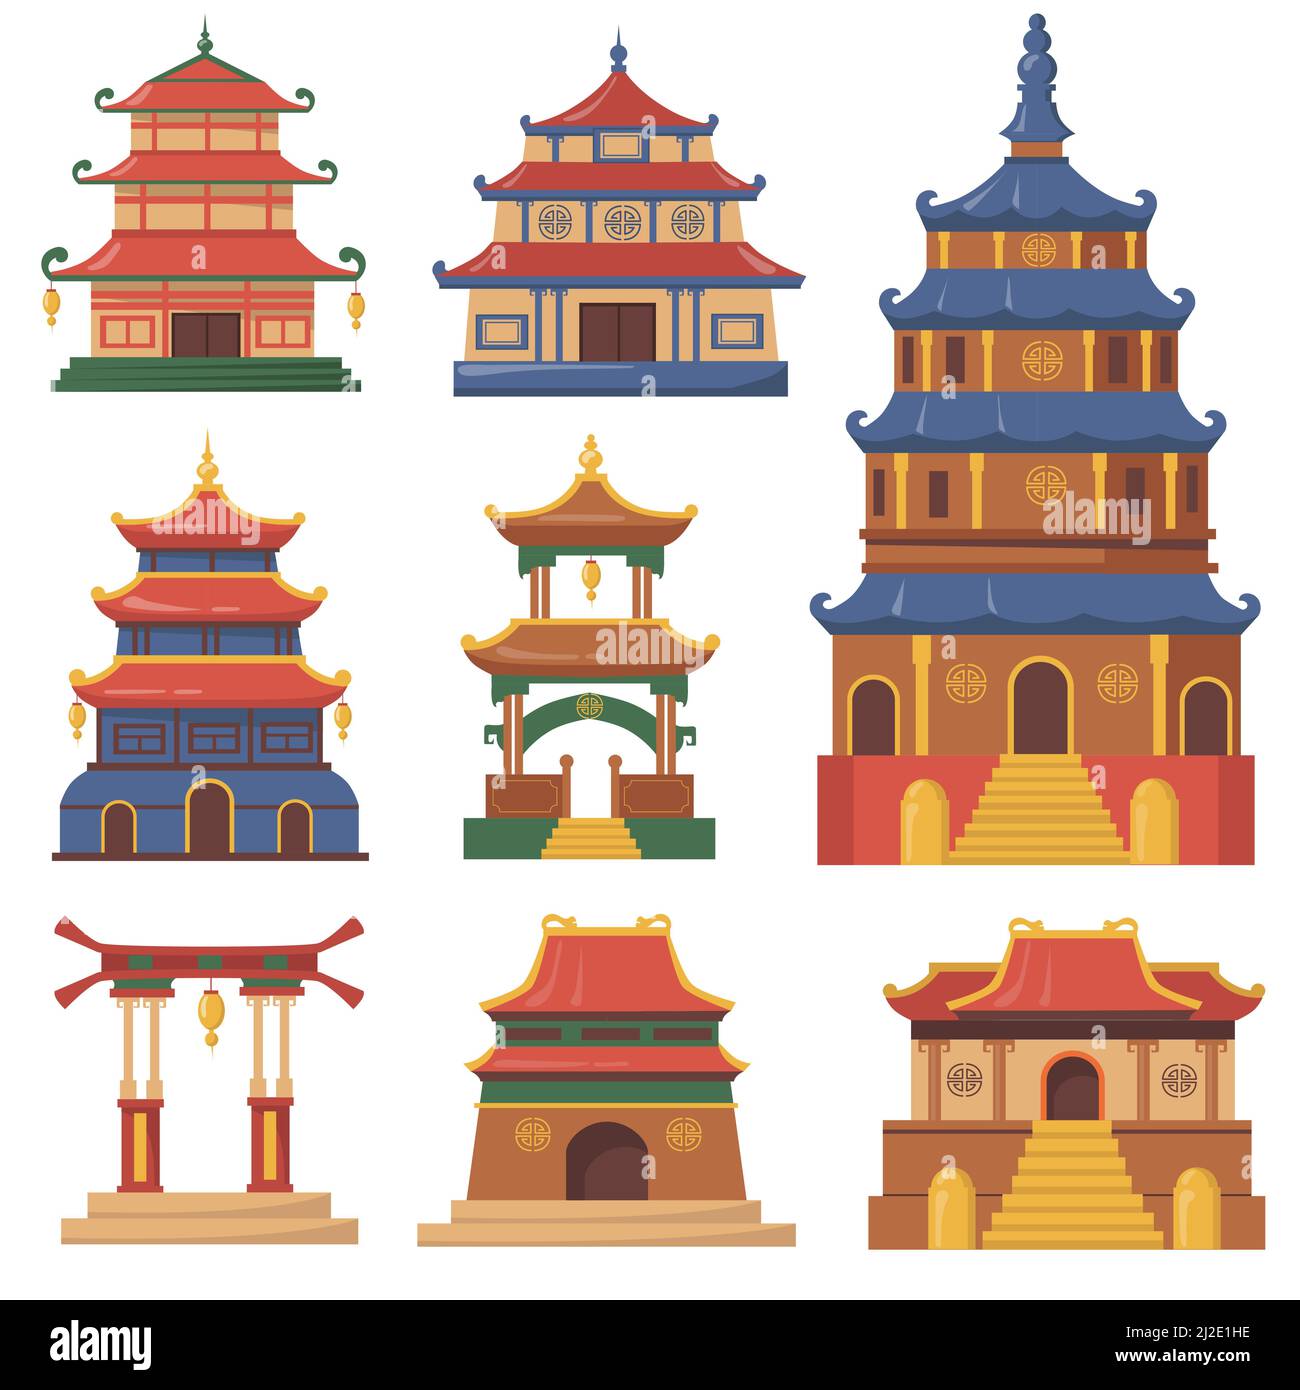 Chine culturelle bâtiments traditionnels ensemble plat pour la conception de Web. Caricature de palais japonais, chinois ou coréen et temples isolés vecteur illustration col Illustration de Vecteur